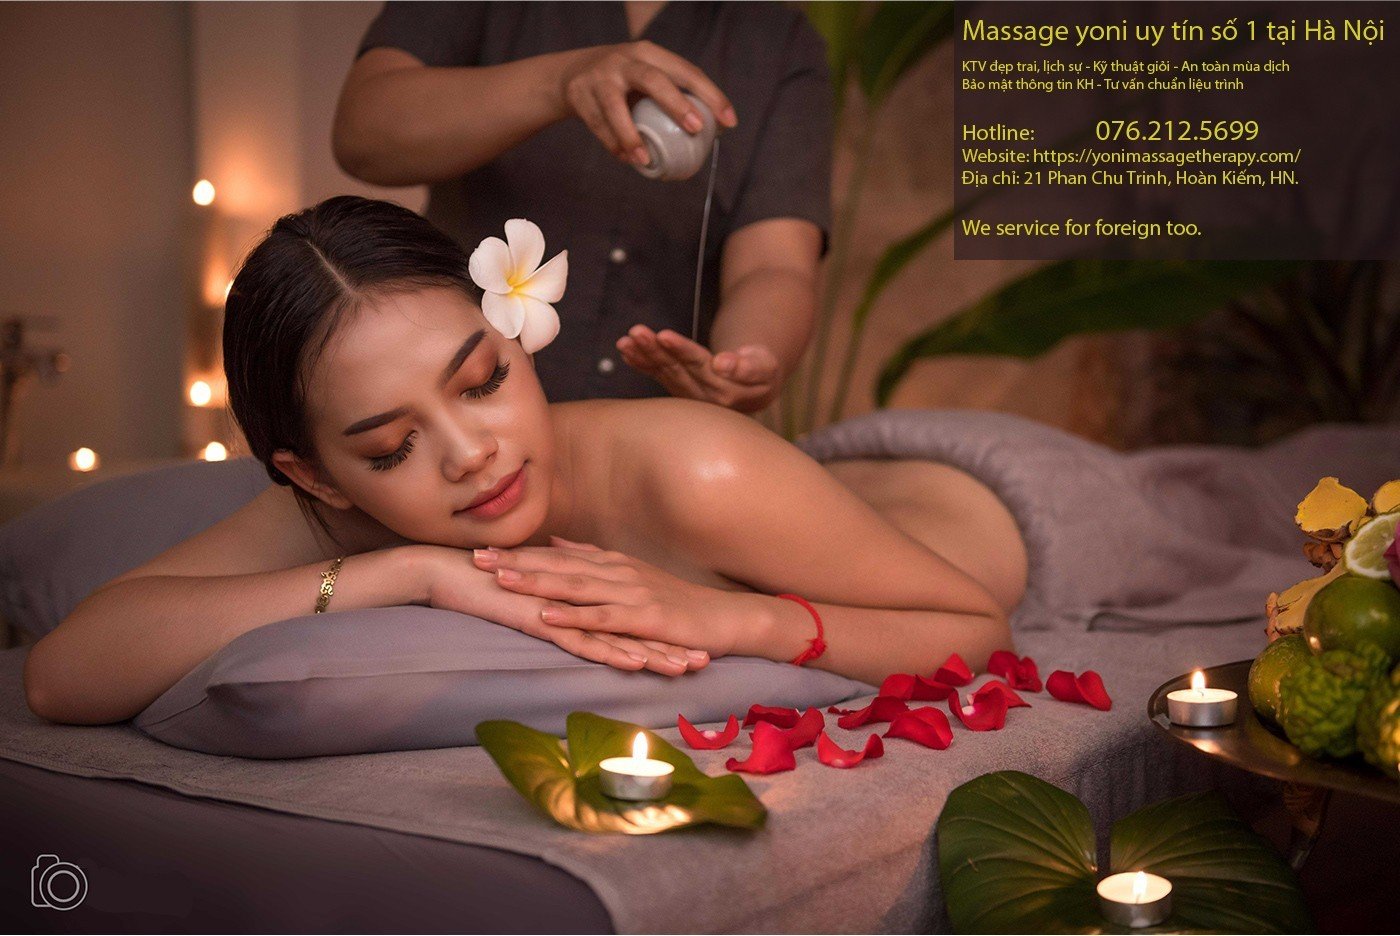 Trải nghiệm massage yoni phù hợp với chị em phụ nữ muốn giải tỏa căng thẳng đầu óc